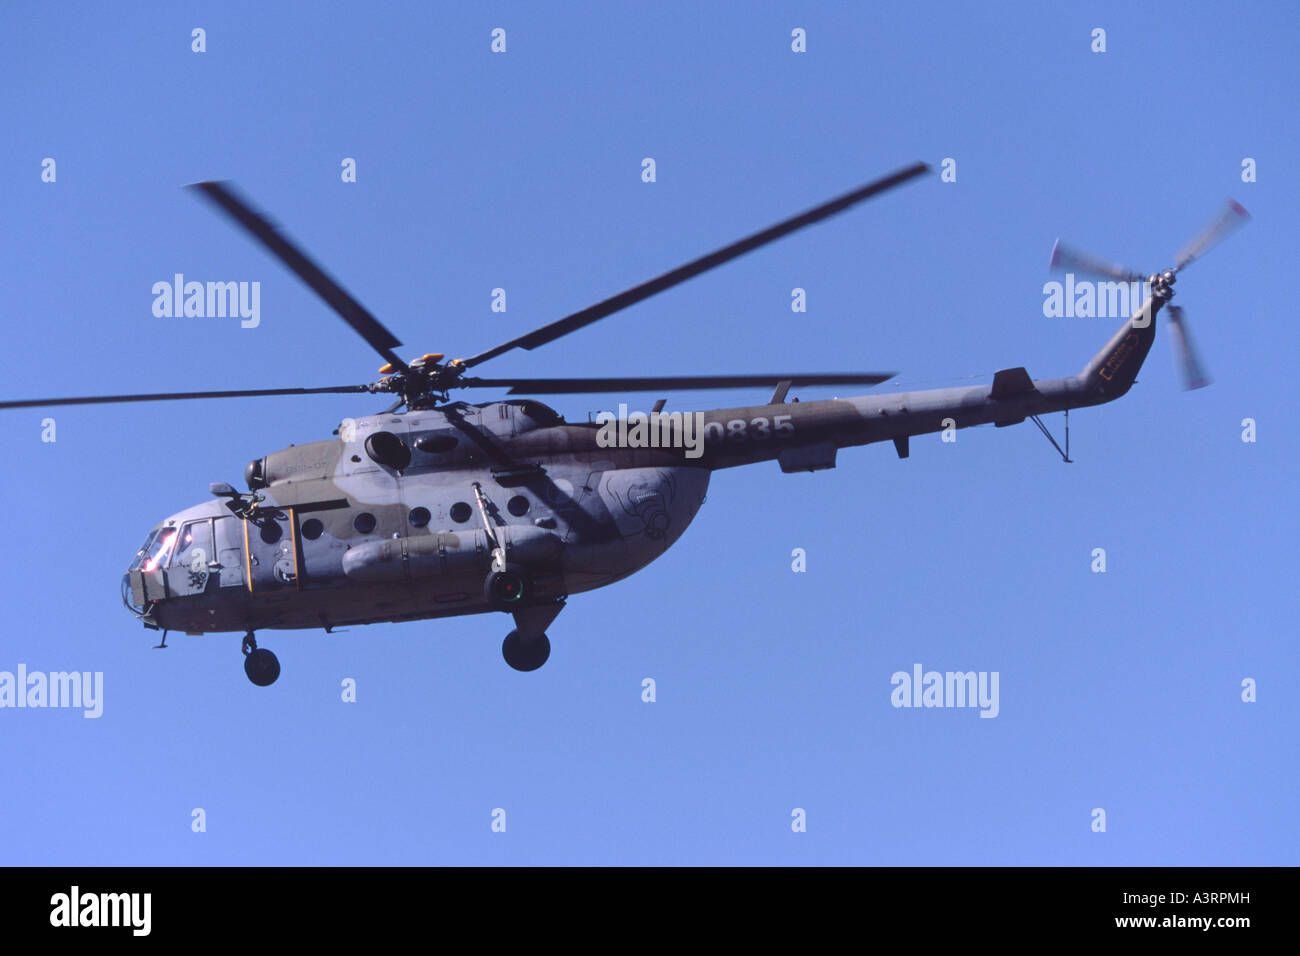 Le Mil Mi 17 exploités par 232 Vrtulnikoveho Letka de l'Armée de l'air tchèque Banque D'Images